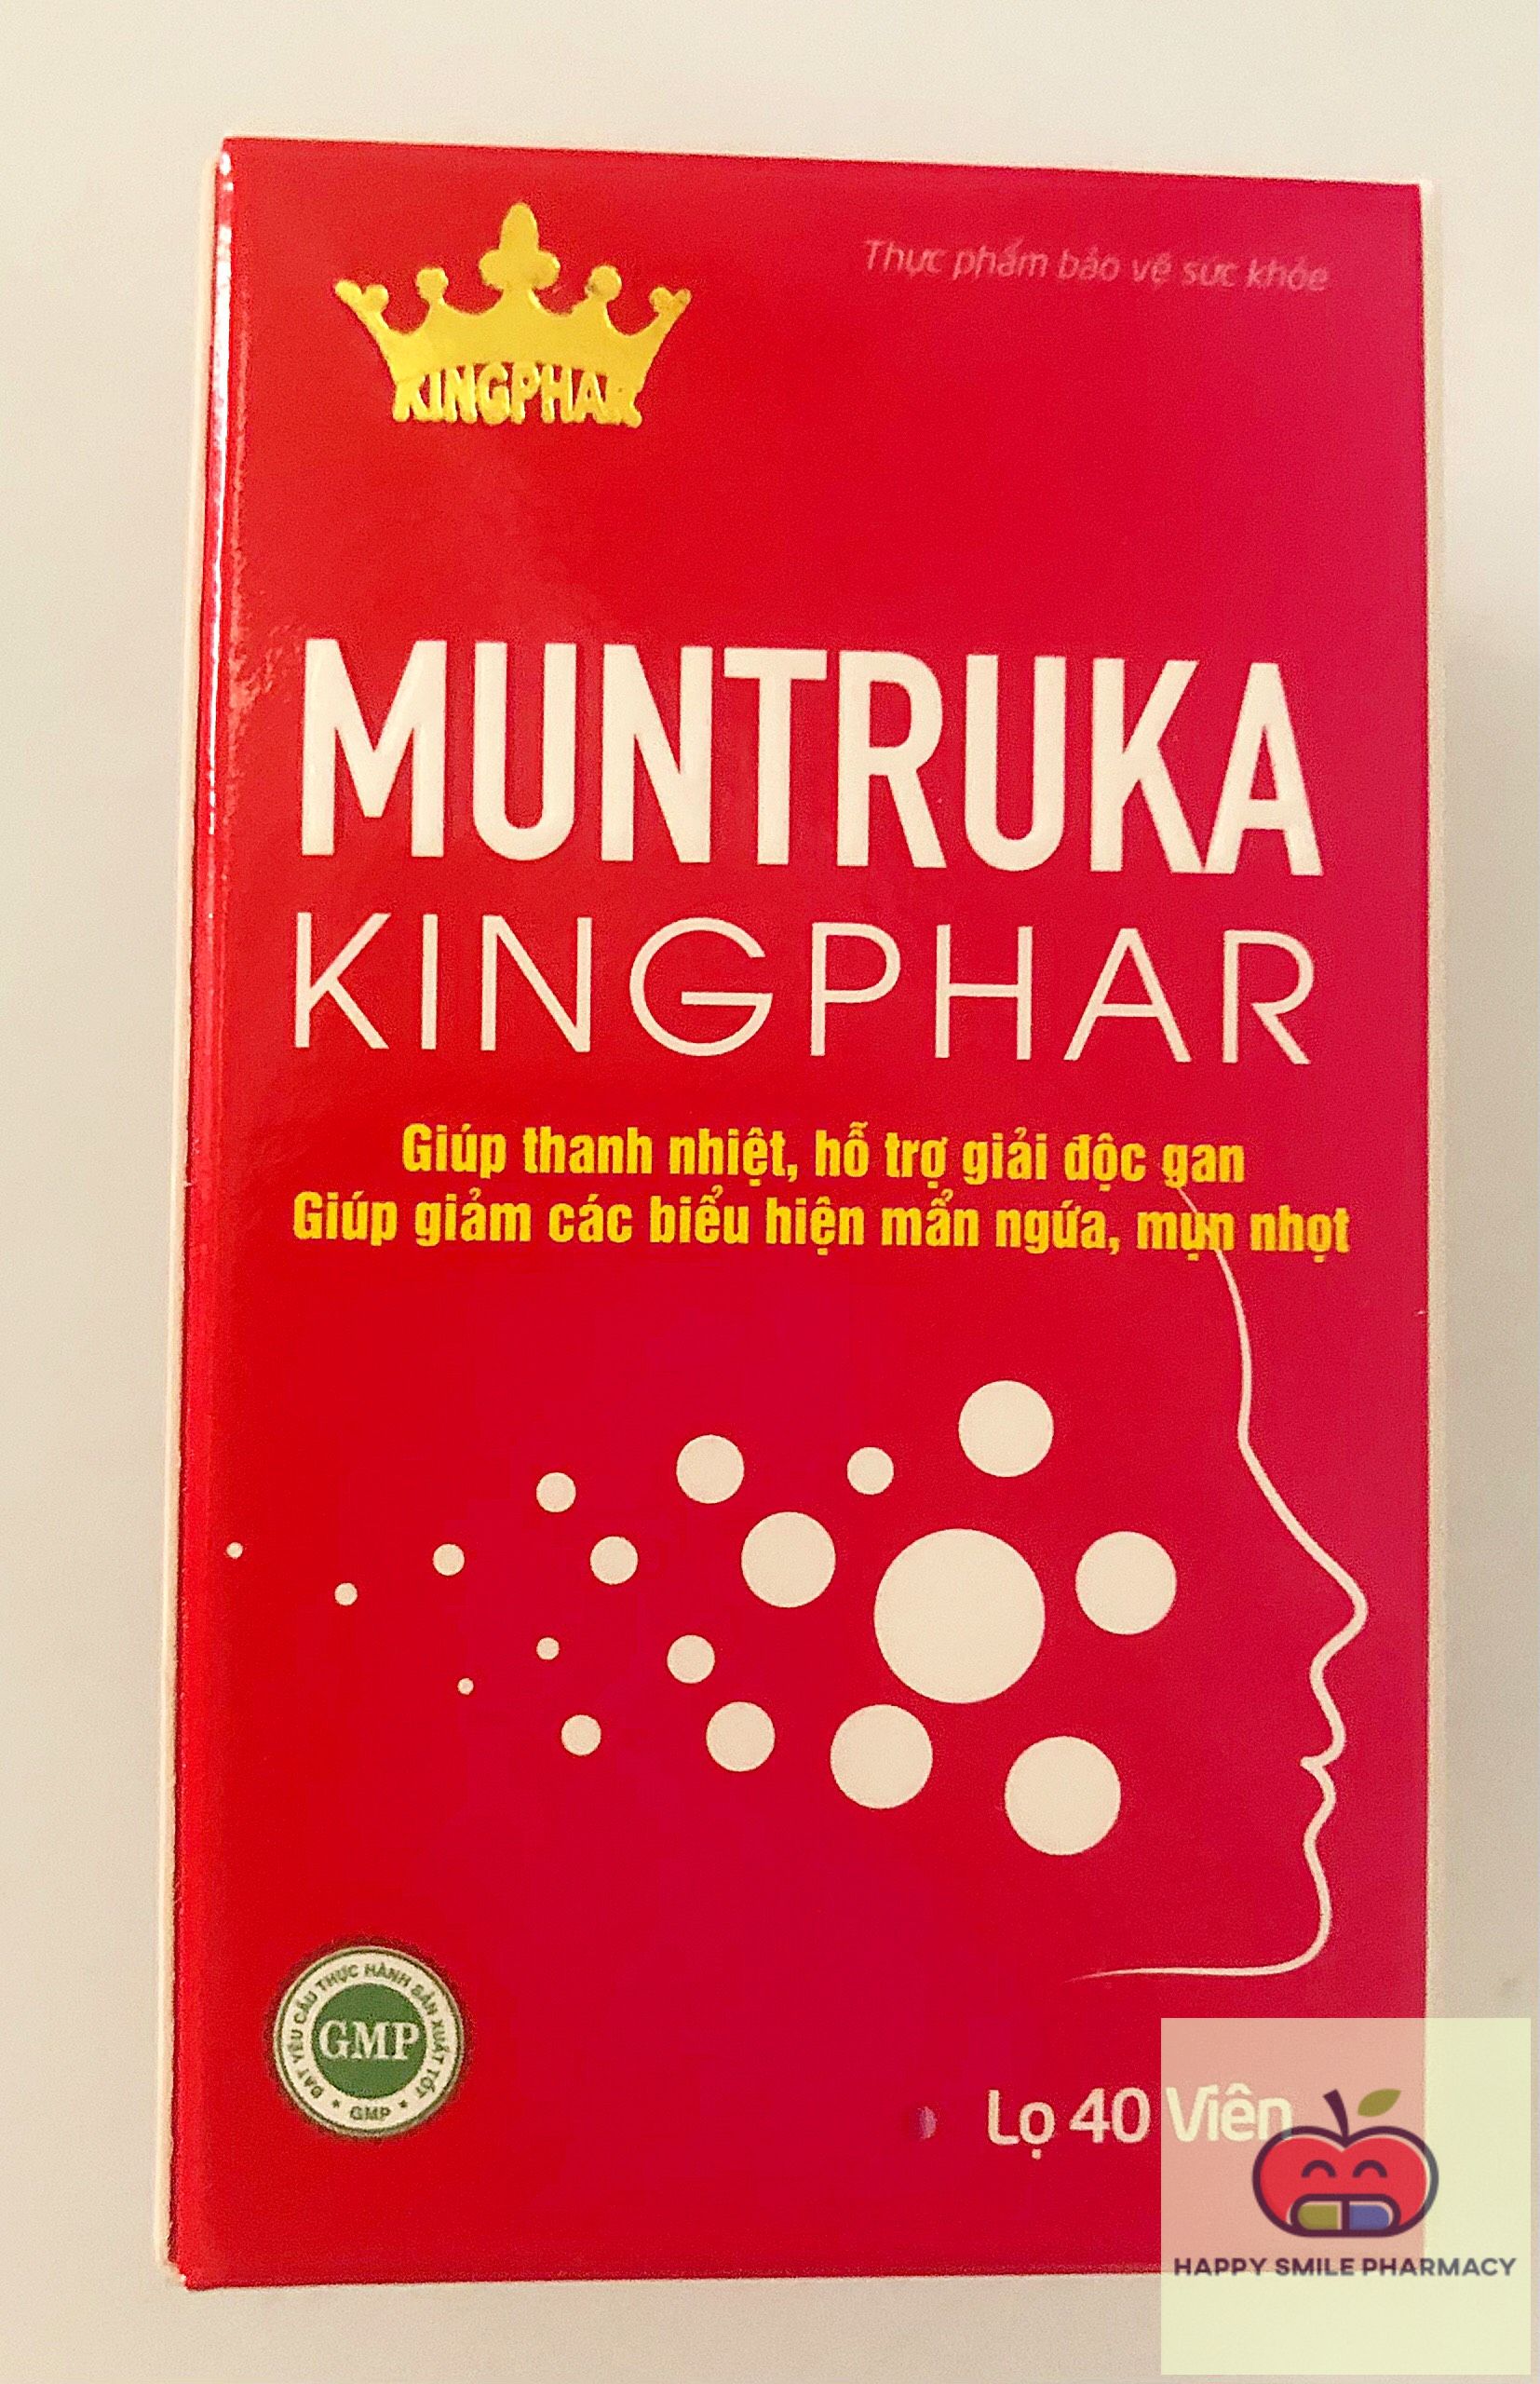 MUNTRUKA Kingphar - Thanh nhiệt, giải độc gan, mẩn ngứa, mụn nhọt